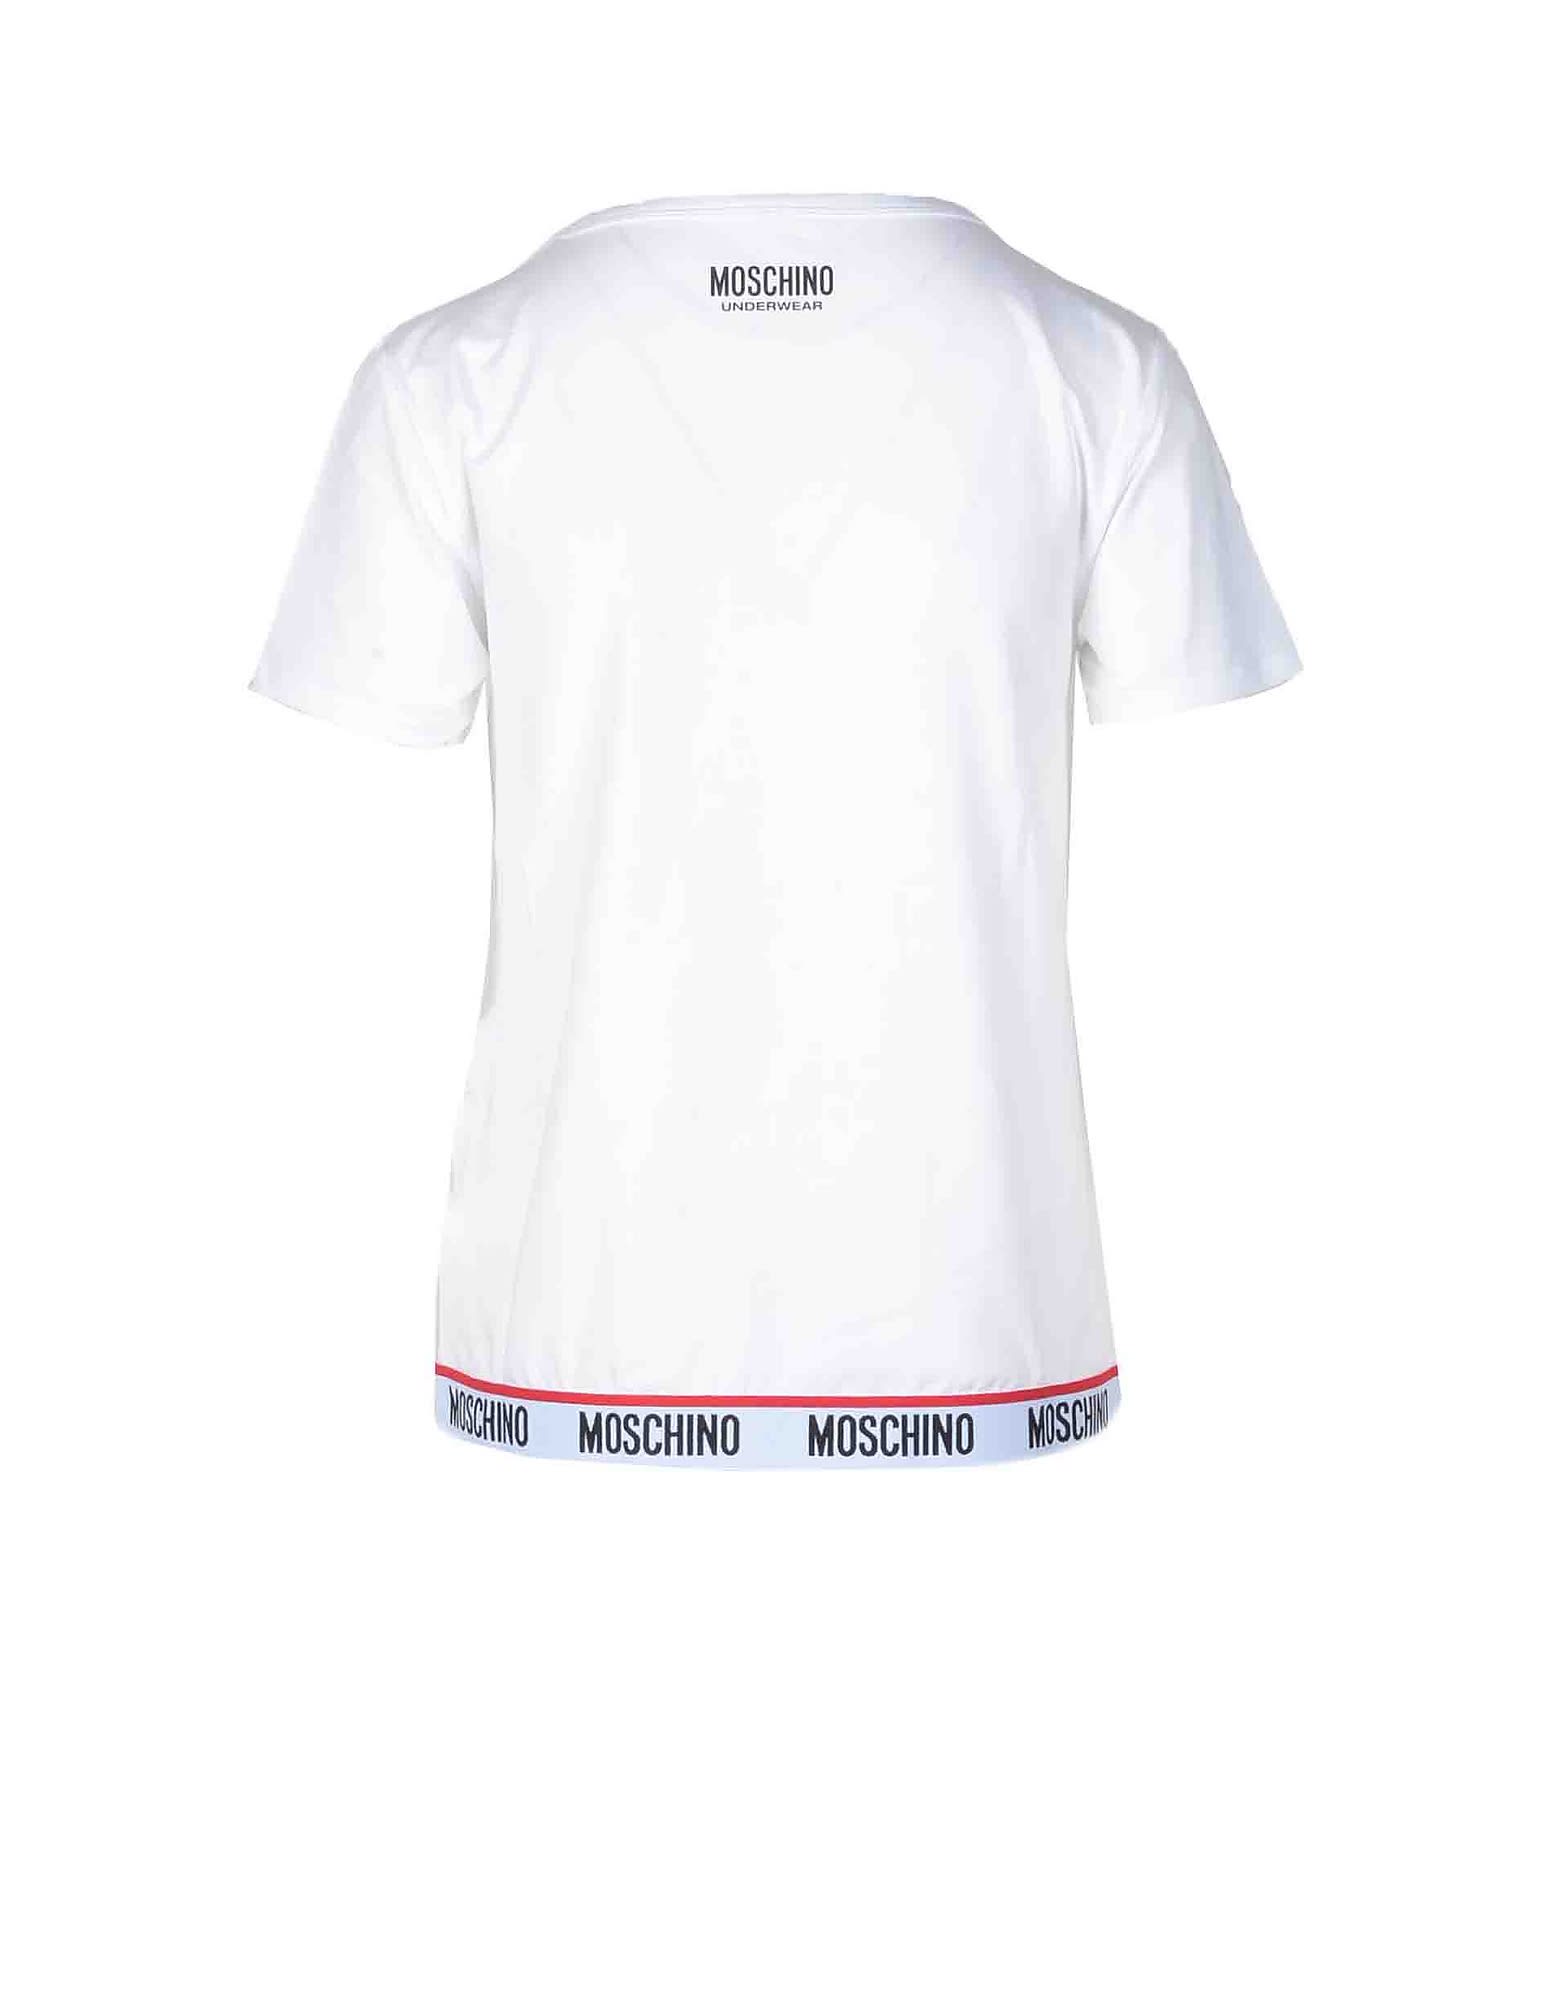 Moschino Womens White T-shirt